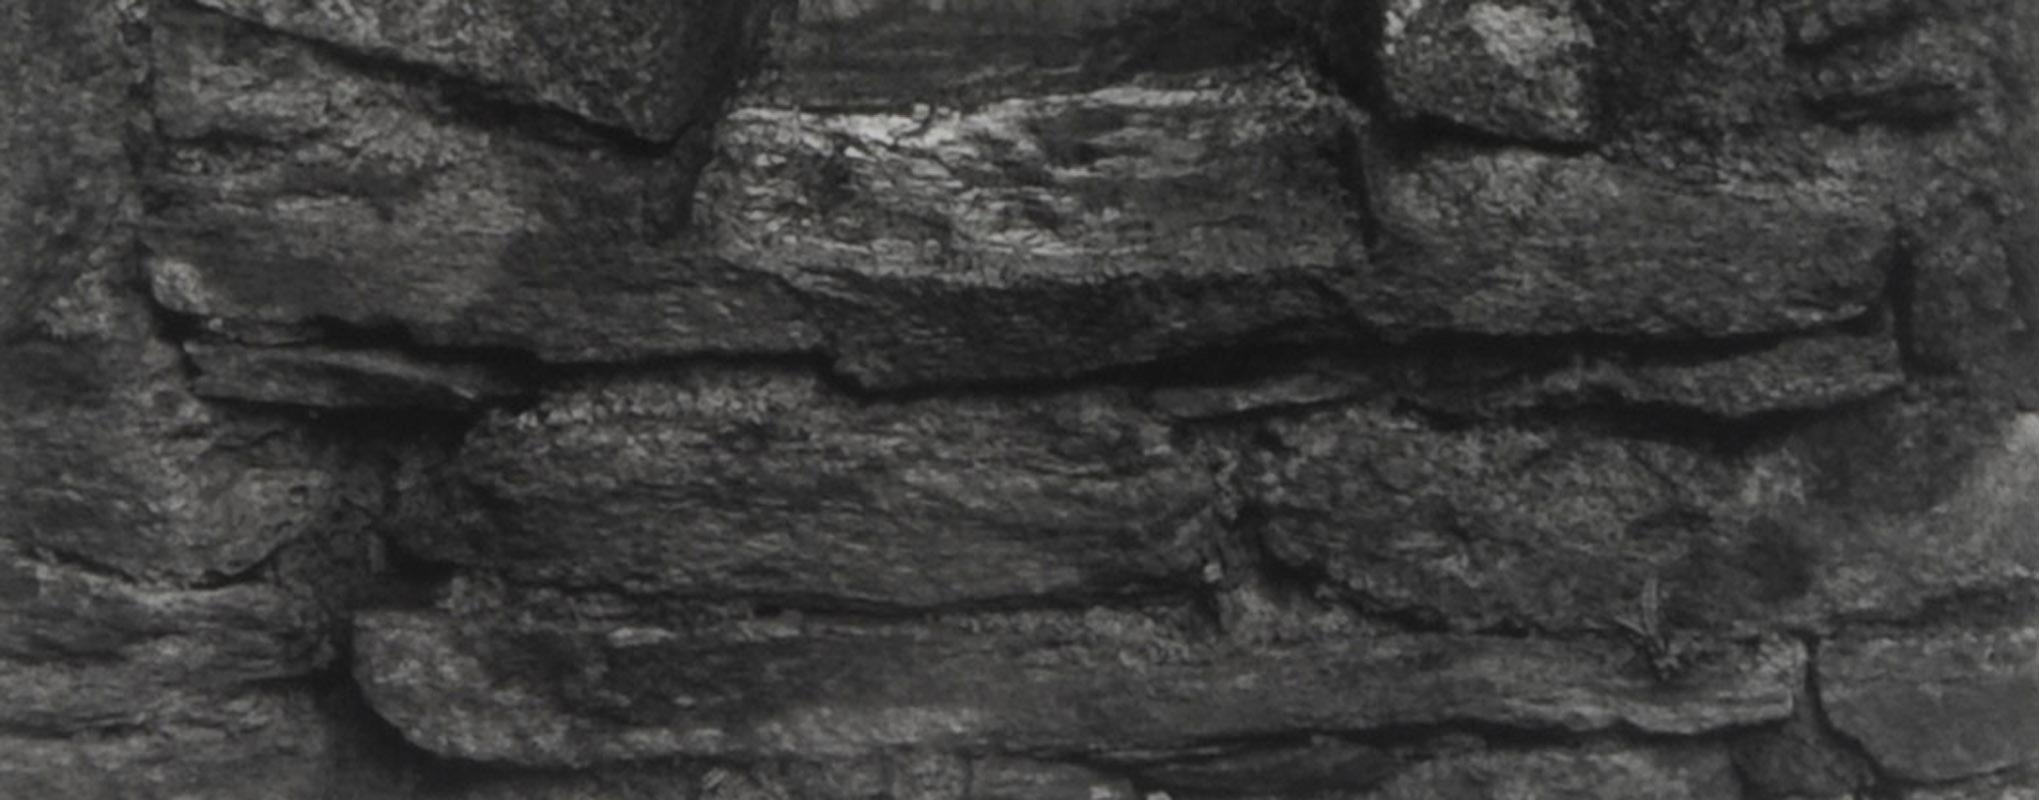 Entrée, Reefert Chuch, Irlande
Impression à la gélatine d'argent, 1989
Signé au crayon en bas à droite sur le support (voir photo)
D'après : Stone Churches of Ireland, publié par Lodima Press, Volume 9
Taille de l'image : 9 1/2 x 8 pouces
Taille du